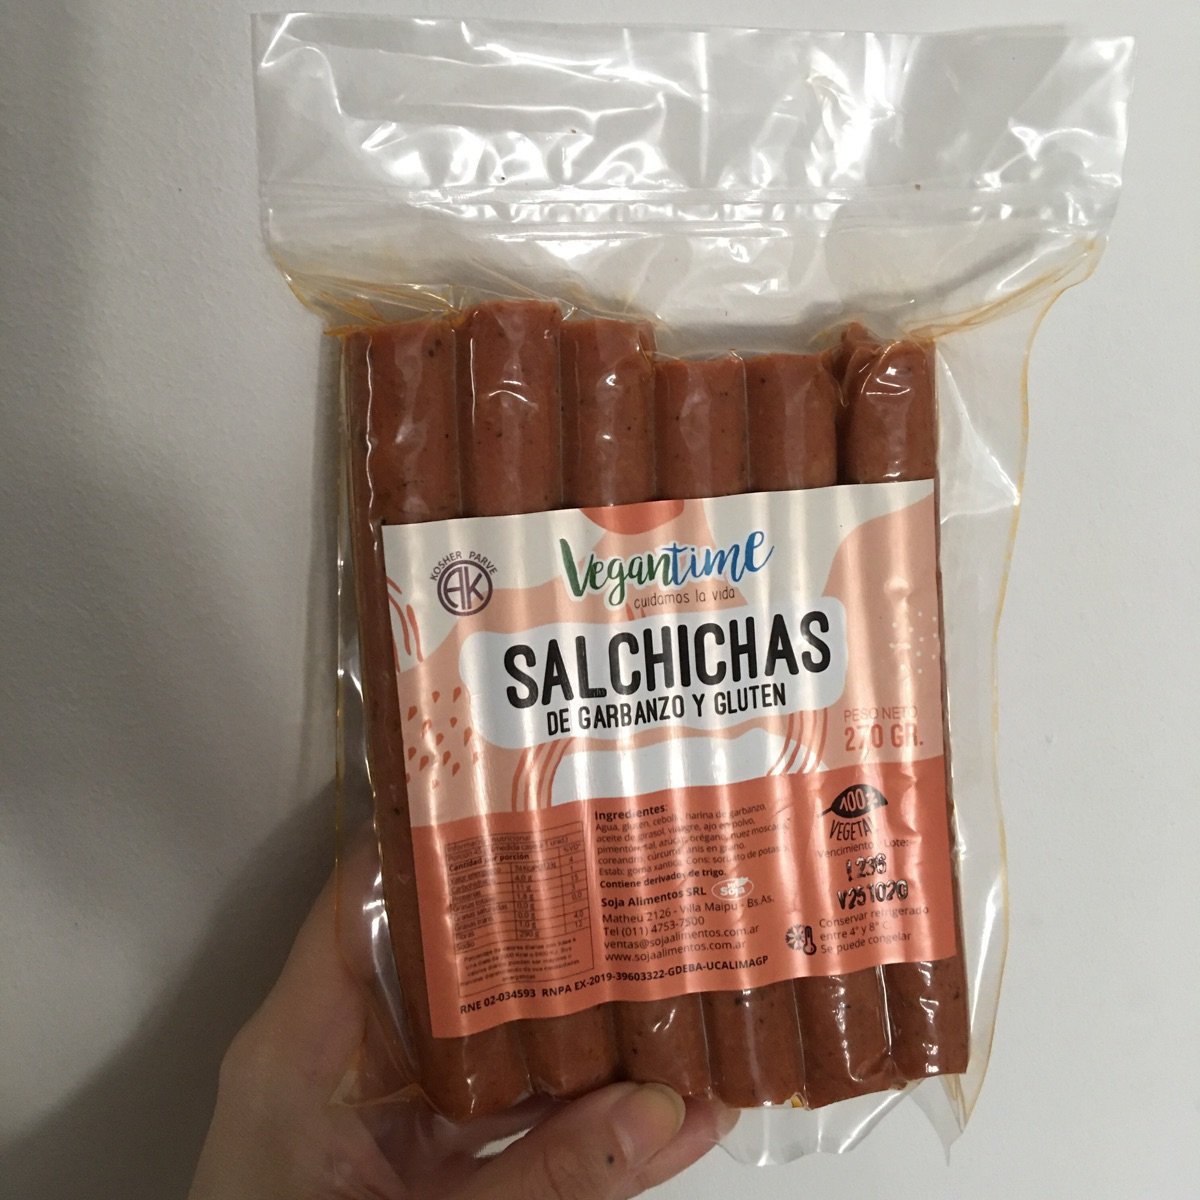 Vegantime Argentina Salchichas de Garbanzo y Gluten Review | abillion